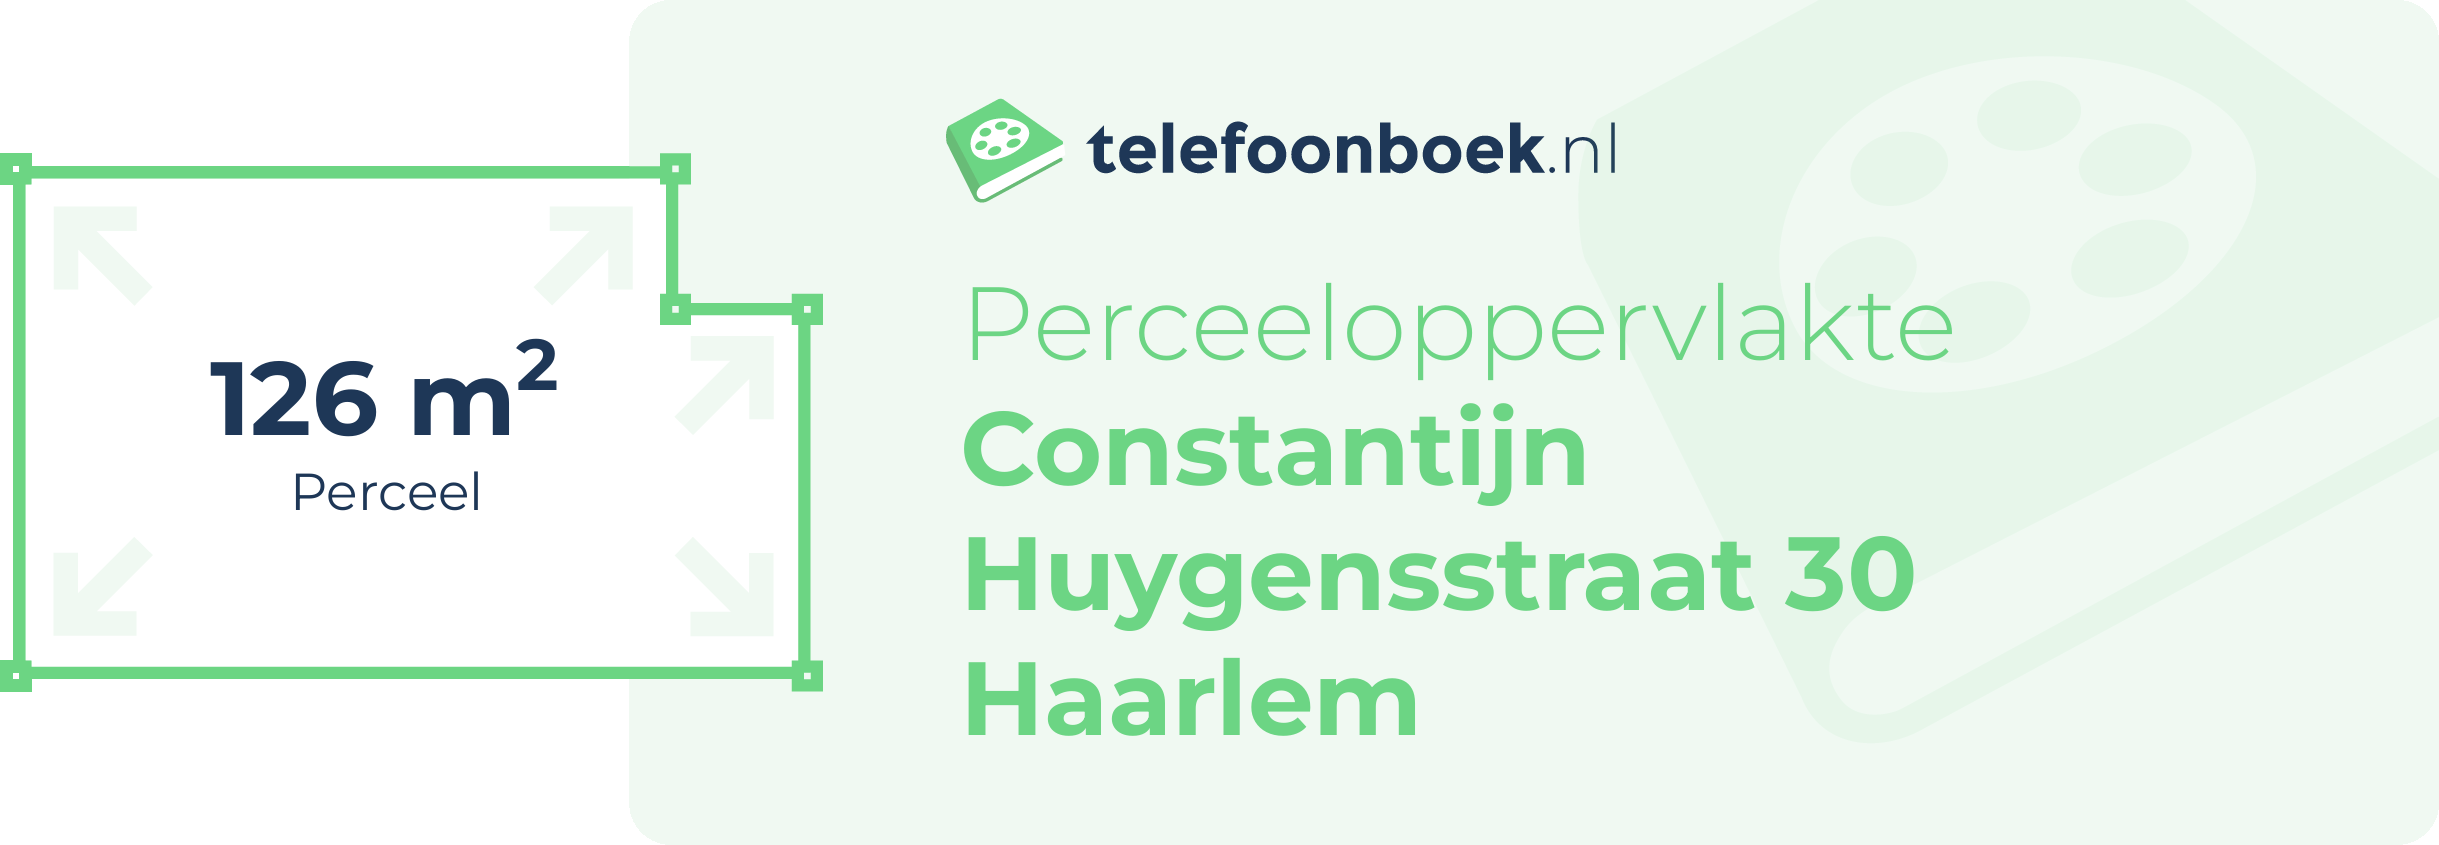 Perceeloppervlakte Constantijn Huygensstraat 30 Haarlem